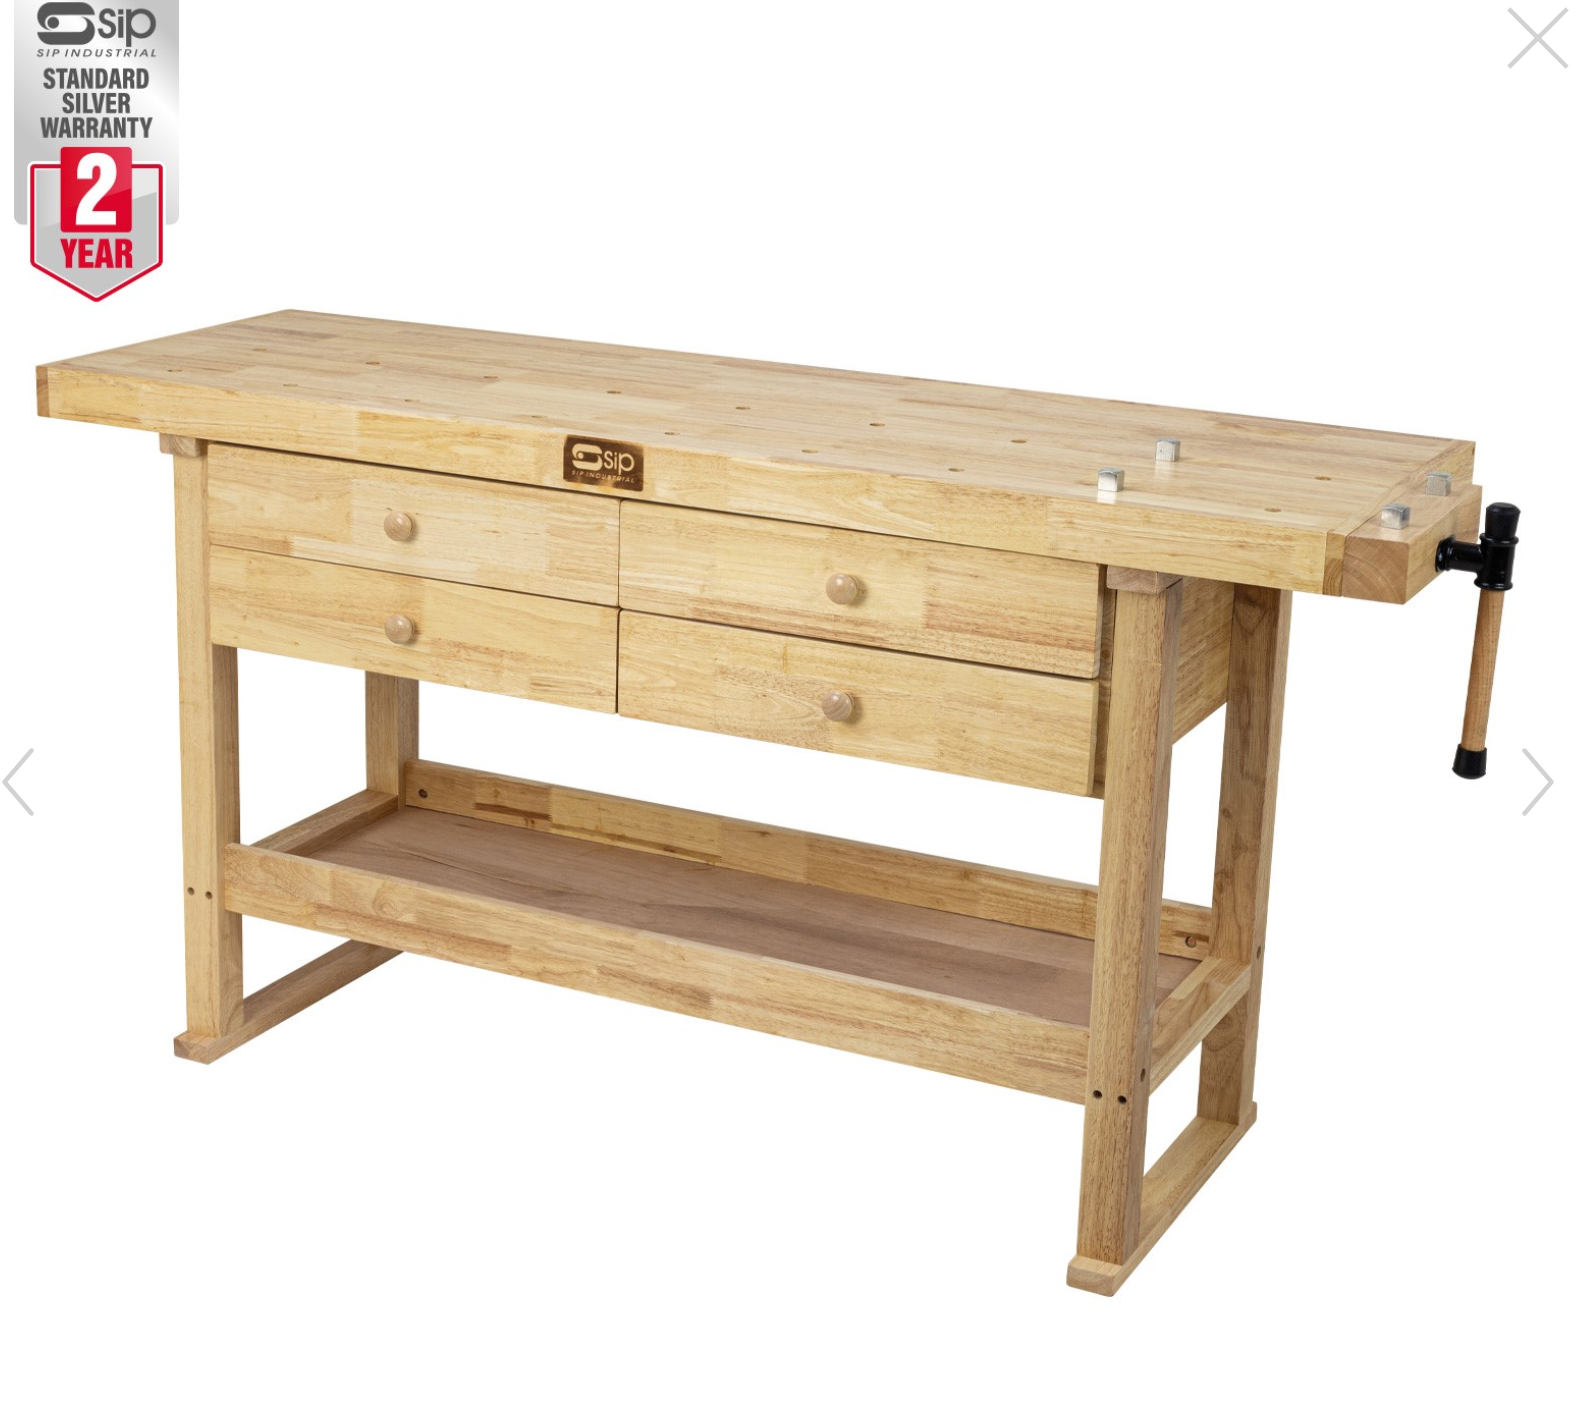 SIP Professional Hardwood 4-Drawer Workbench - 1460